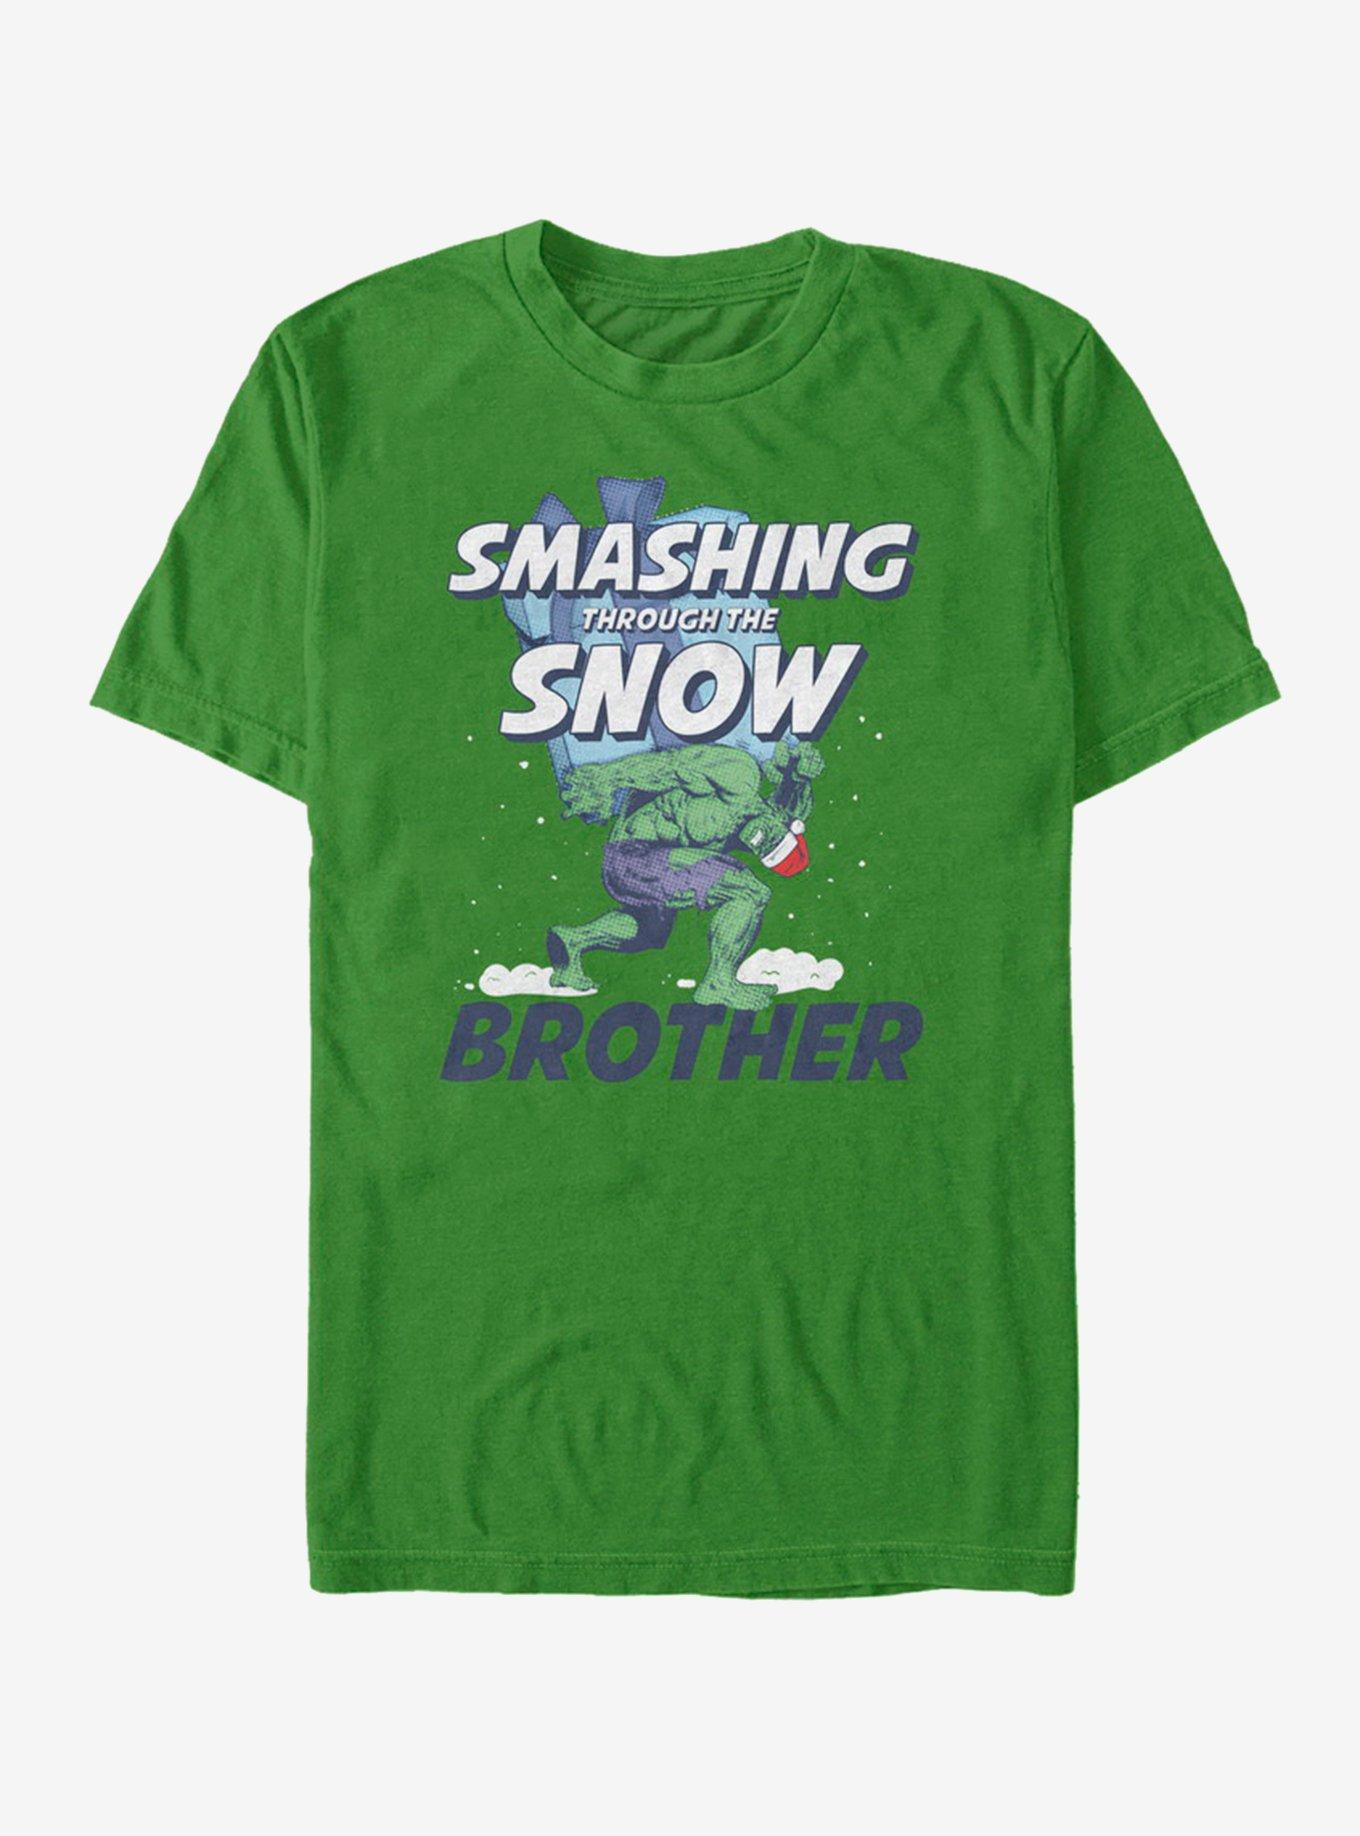 Marvel Hulk Smashing Snow Brother T-Shirt